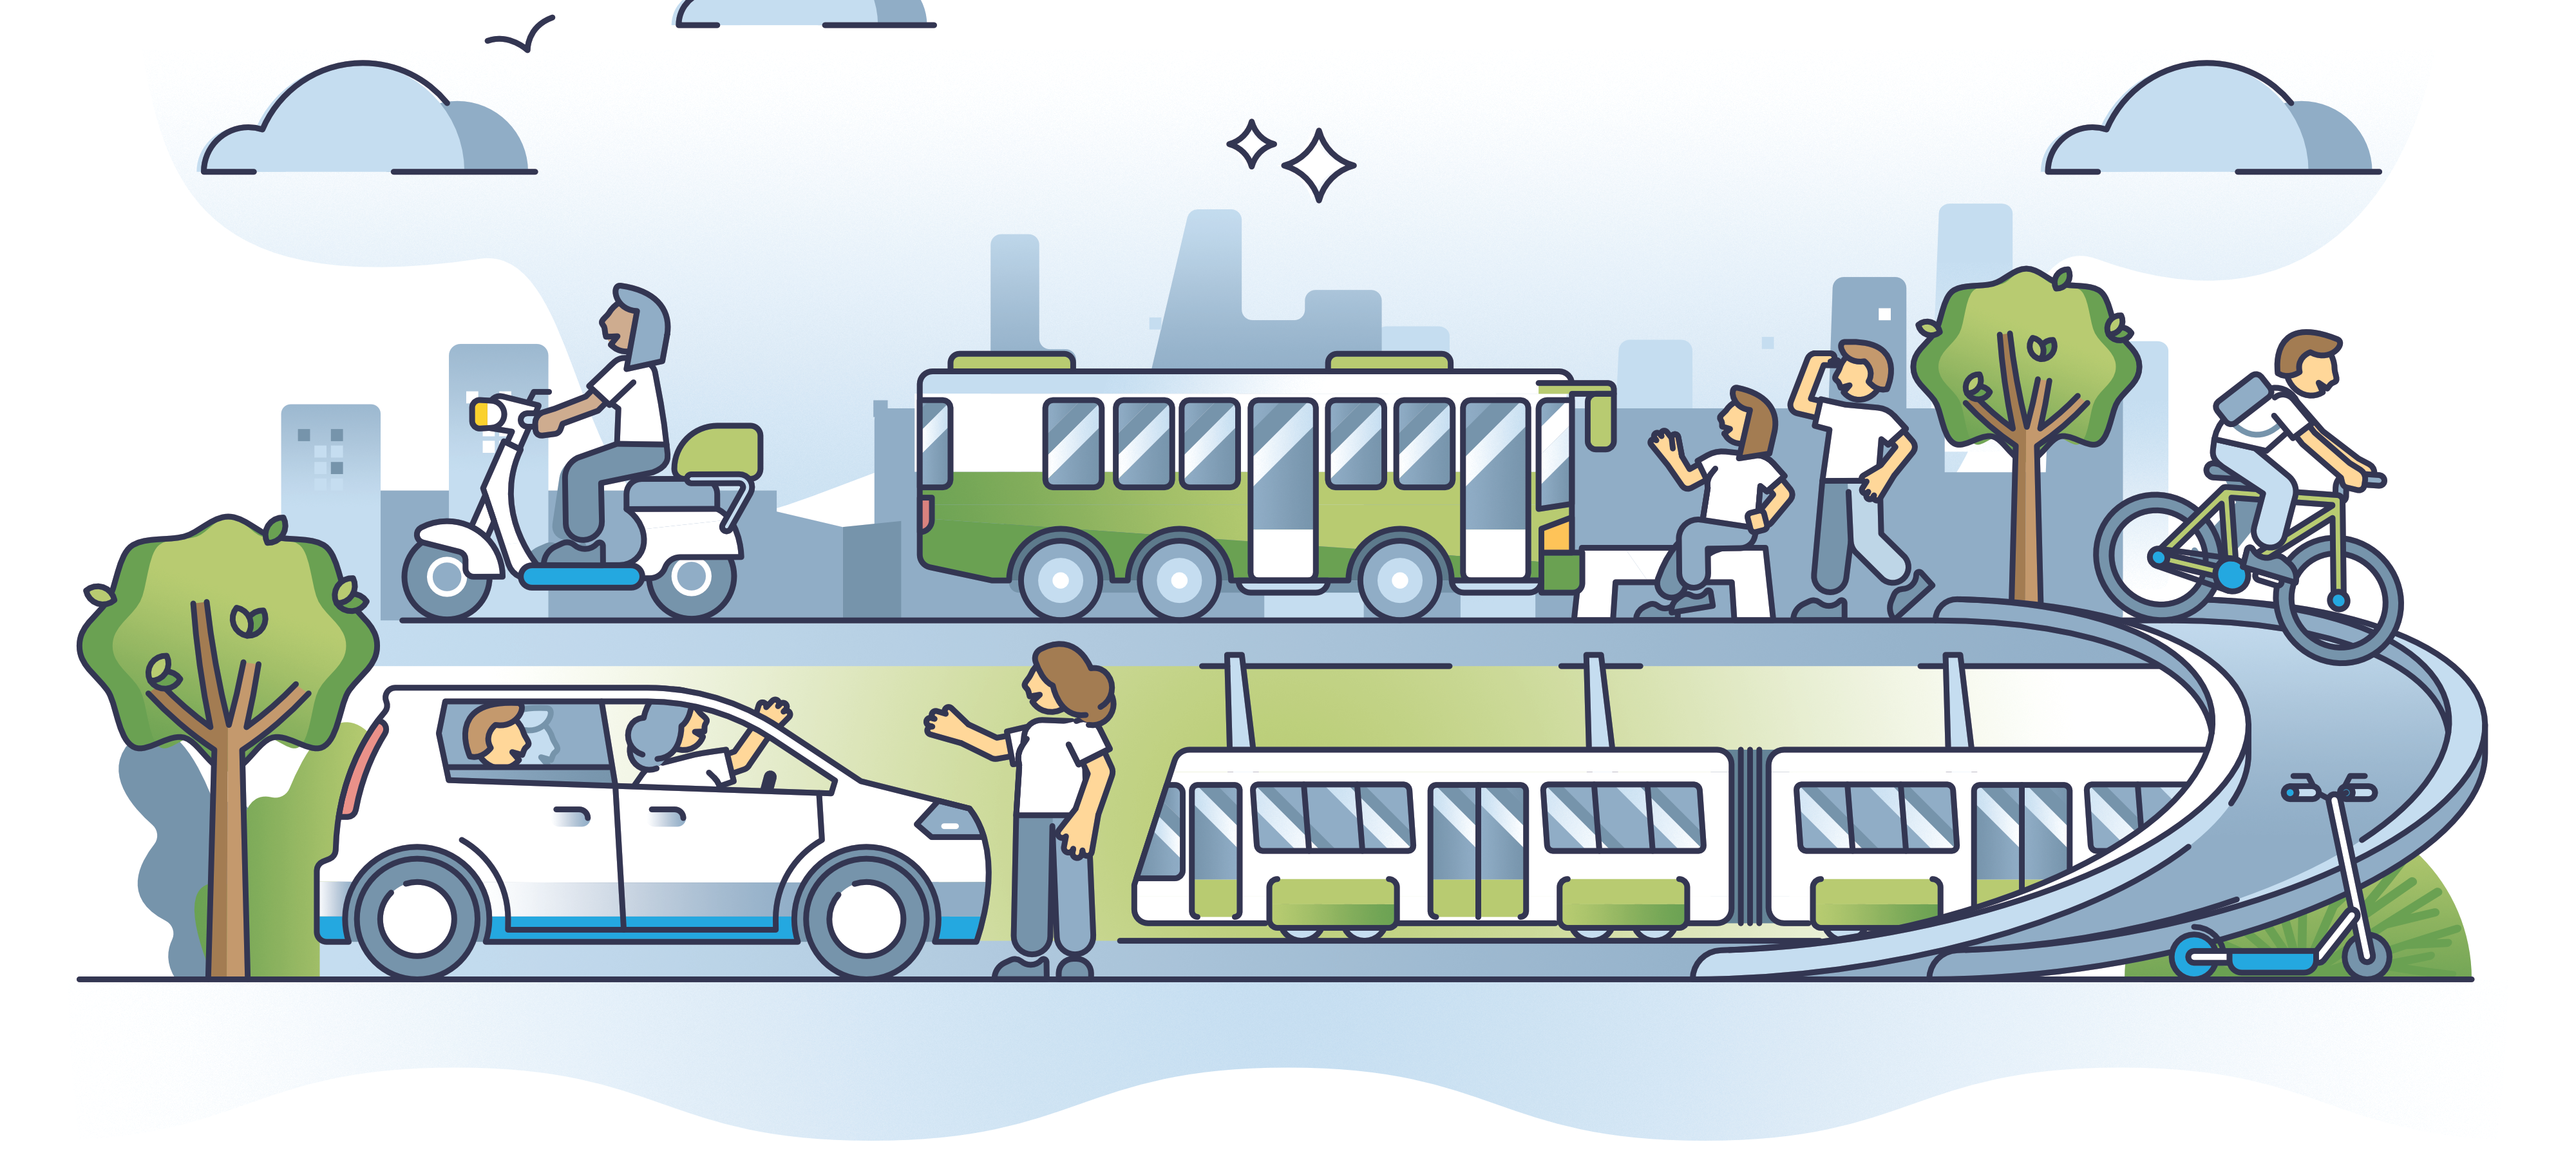 Die Abbildung zeigt verschiedene Fahrzeuge: Bus, Auto, Zug, Fahrrad, Roller